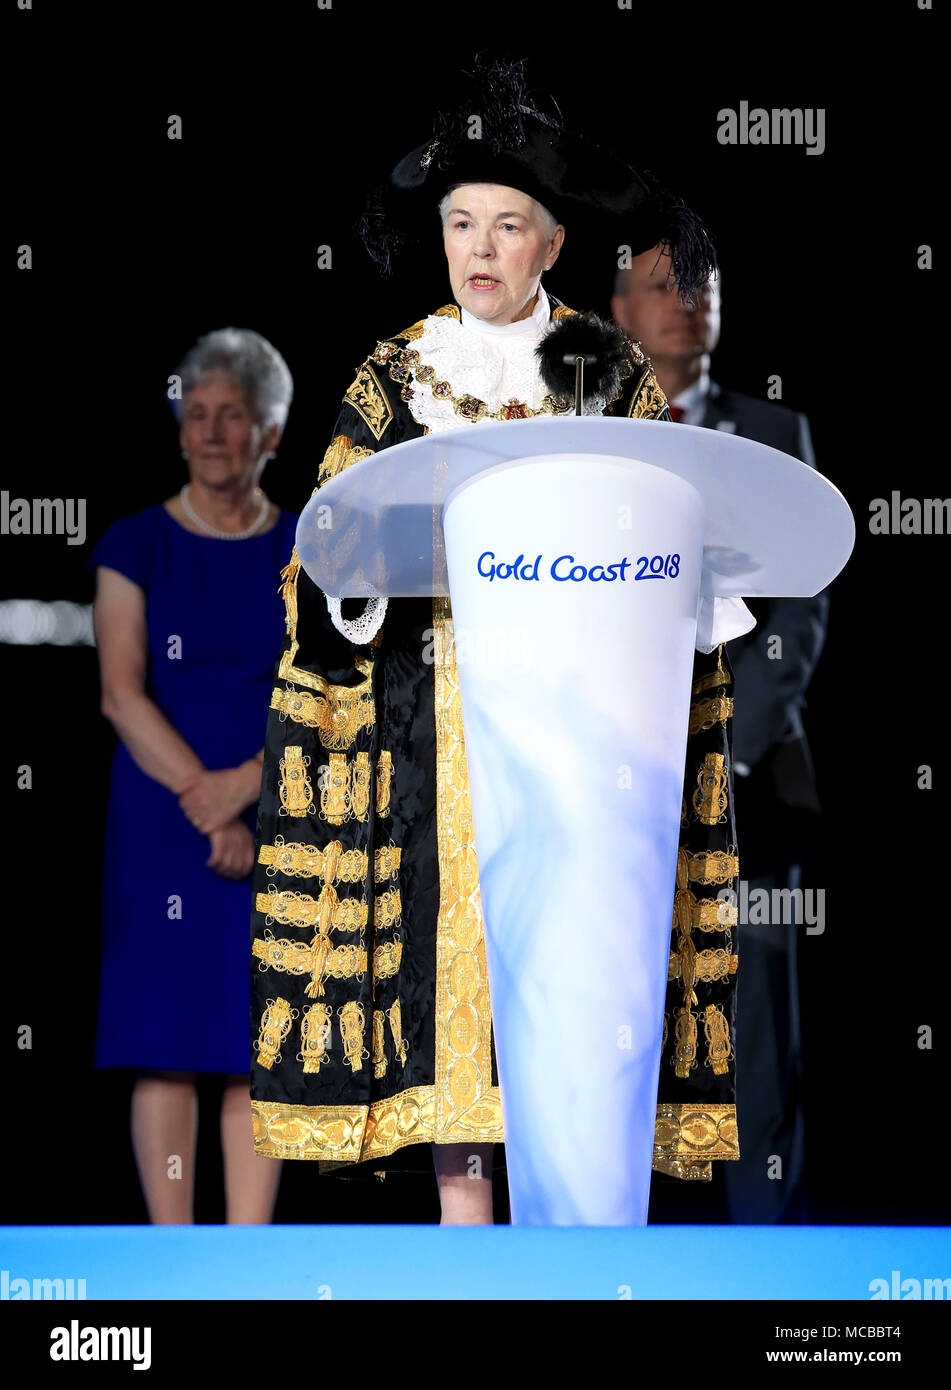 Herr Bürgermeister von Birmingham Ratsmitglied Anne Underwood Rede als Teil der Übergabe bei der Abschlussfeier für die Commonwealth Games 2018 in Carrara Stadion an der Gold Coast, Australien. Stockfoto